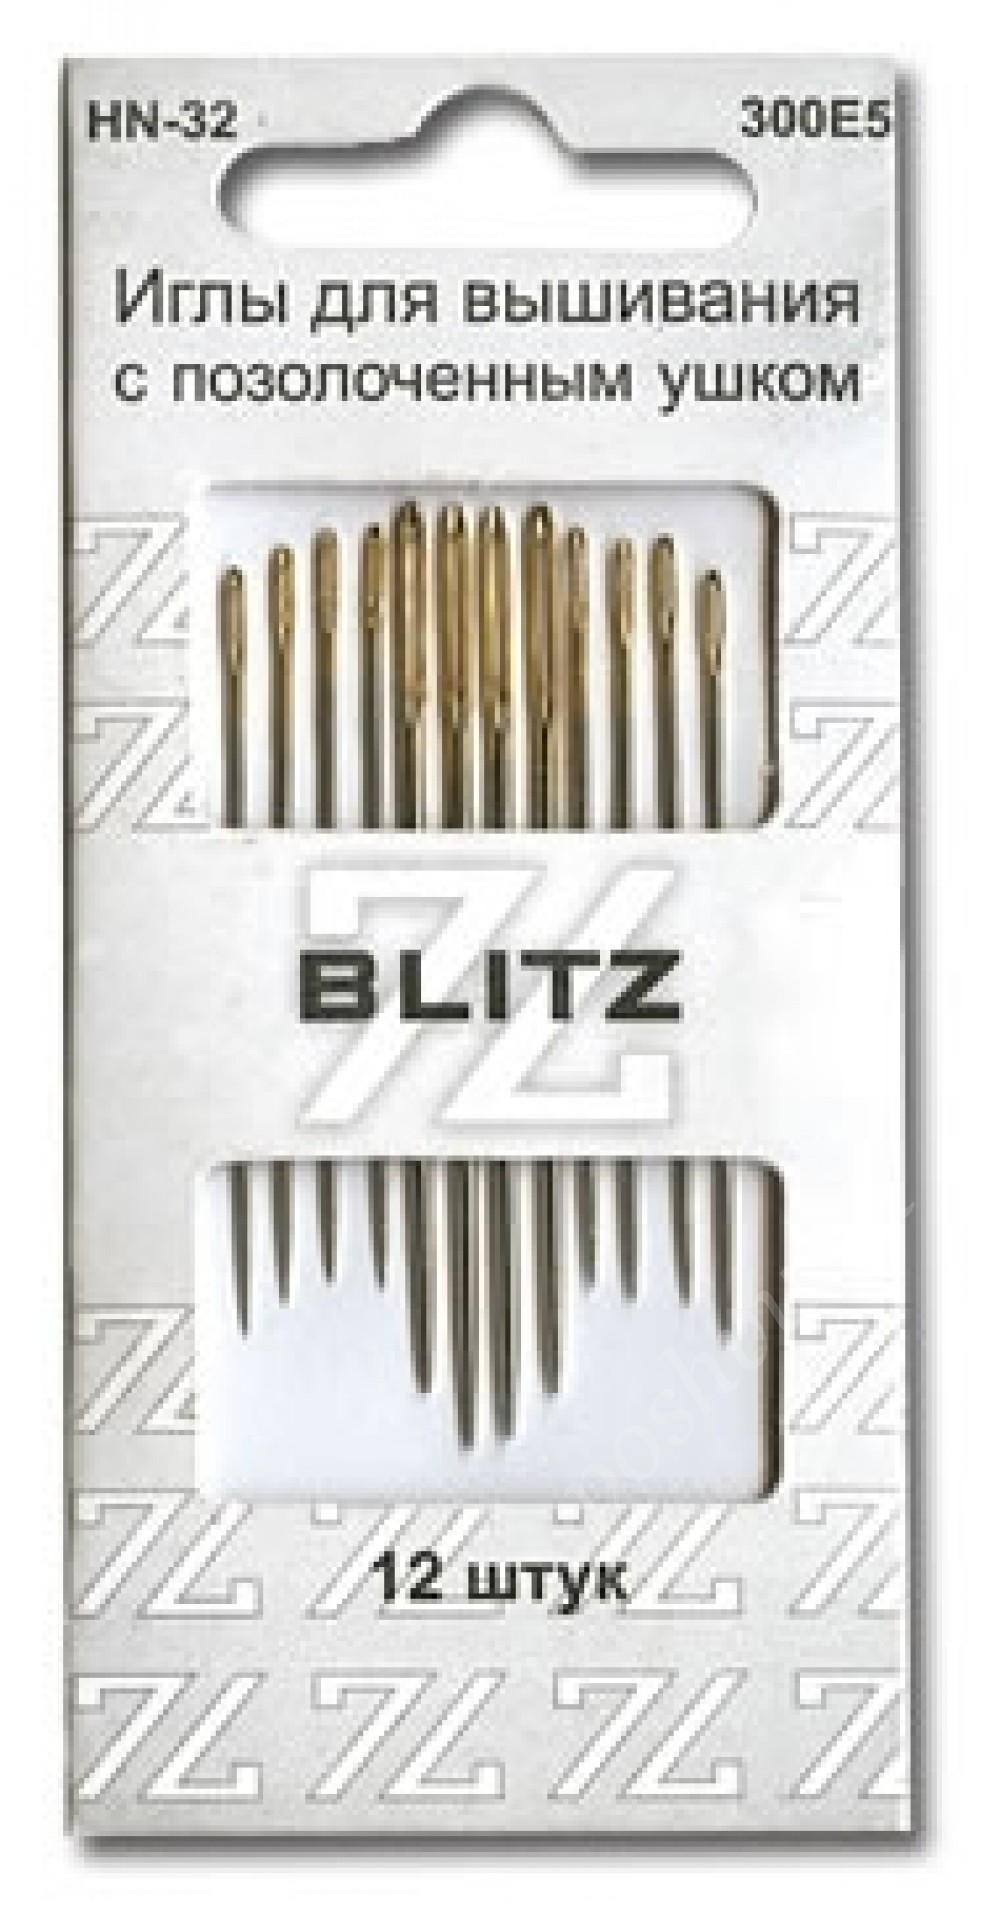 Иглы для шитья ручные "BLITZ" для рукоделия HN-32 300Е5 в блистере 12 шт.